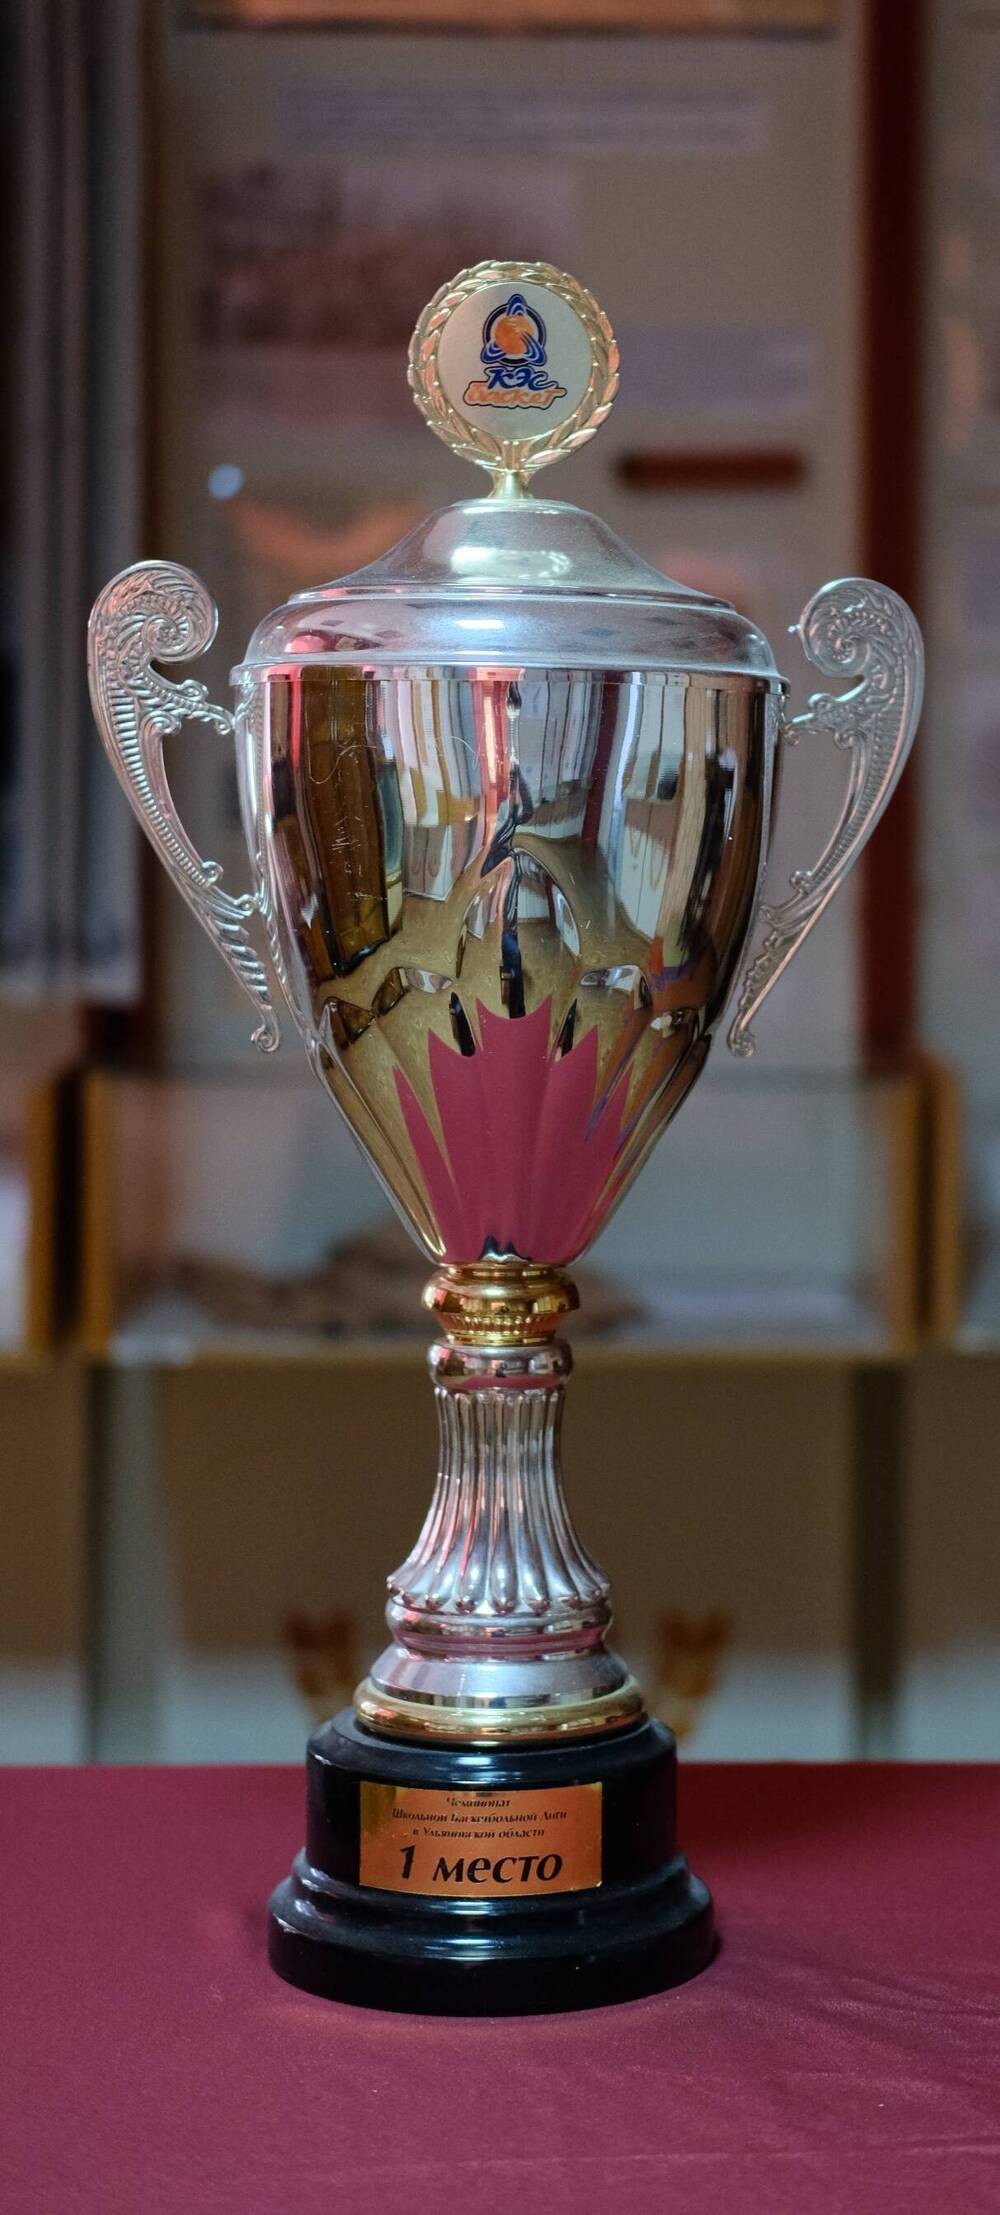 ДЮСШ Нейтронкубок 1 место.Чемпионат школьной баскетбольной лиги в Ульяновской области